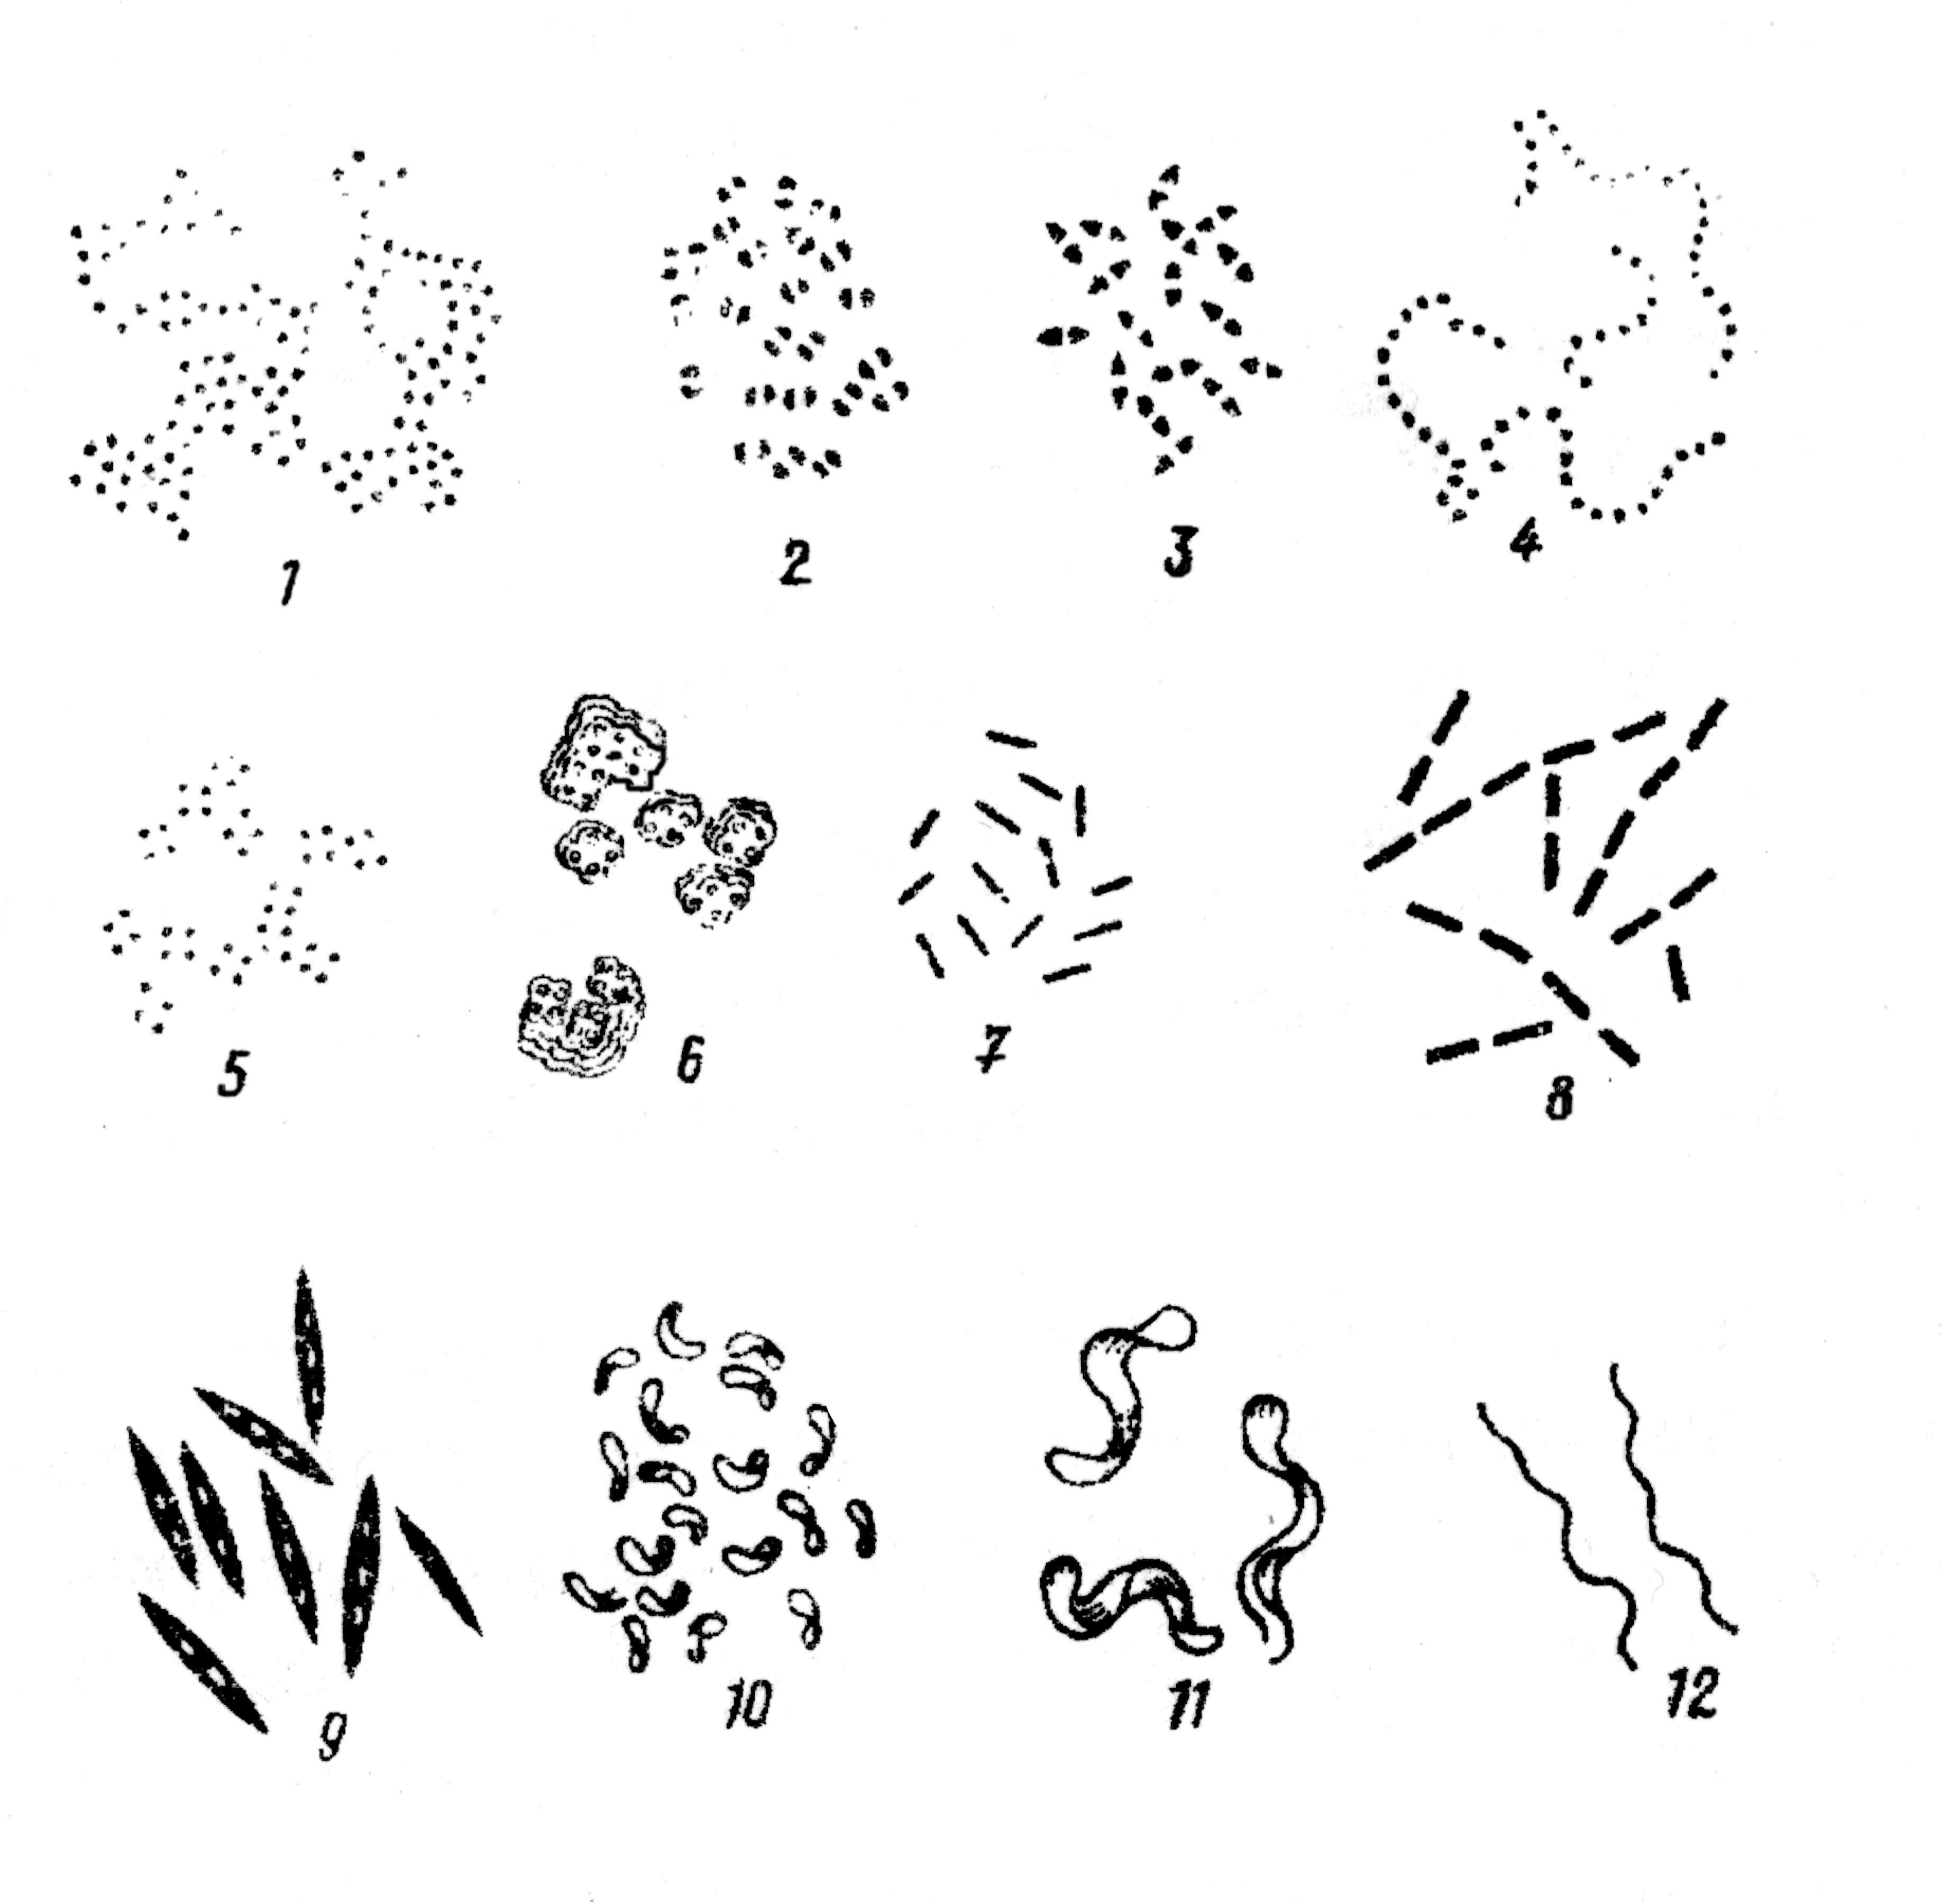 Какие формы бактерий изображены на рисунках